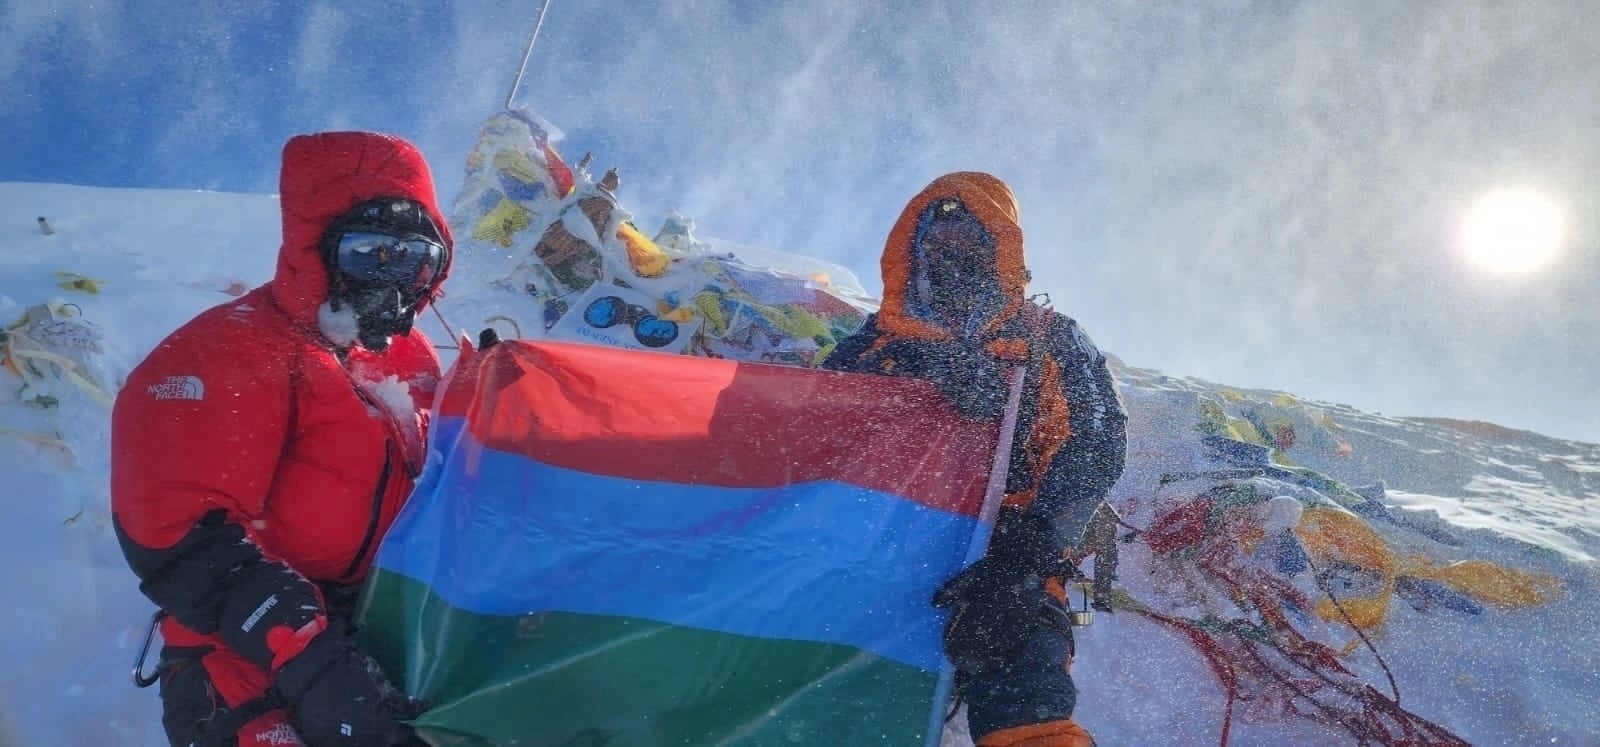 Восхождение карельского альпиниста на самую высокую гору мира заняло 49 дней. Фото взято со страницы Константина Сергеева ВКонтакте